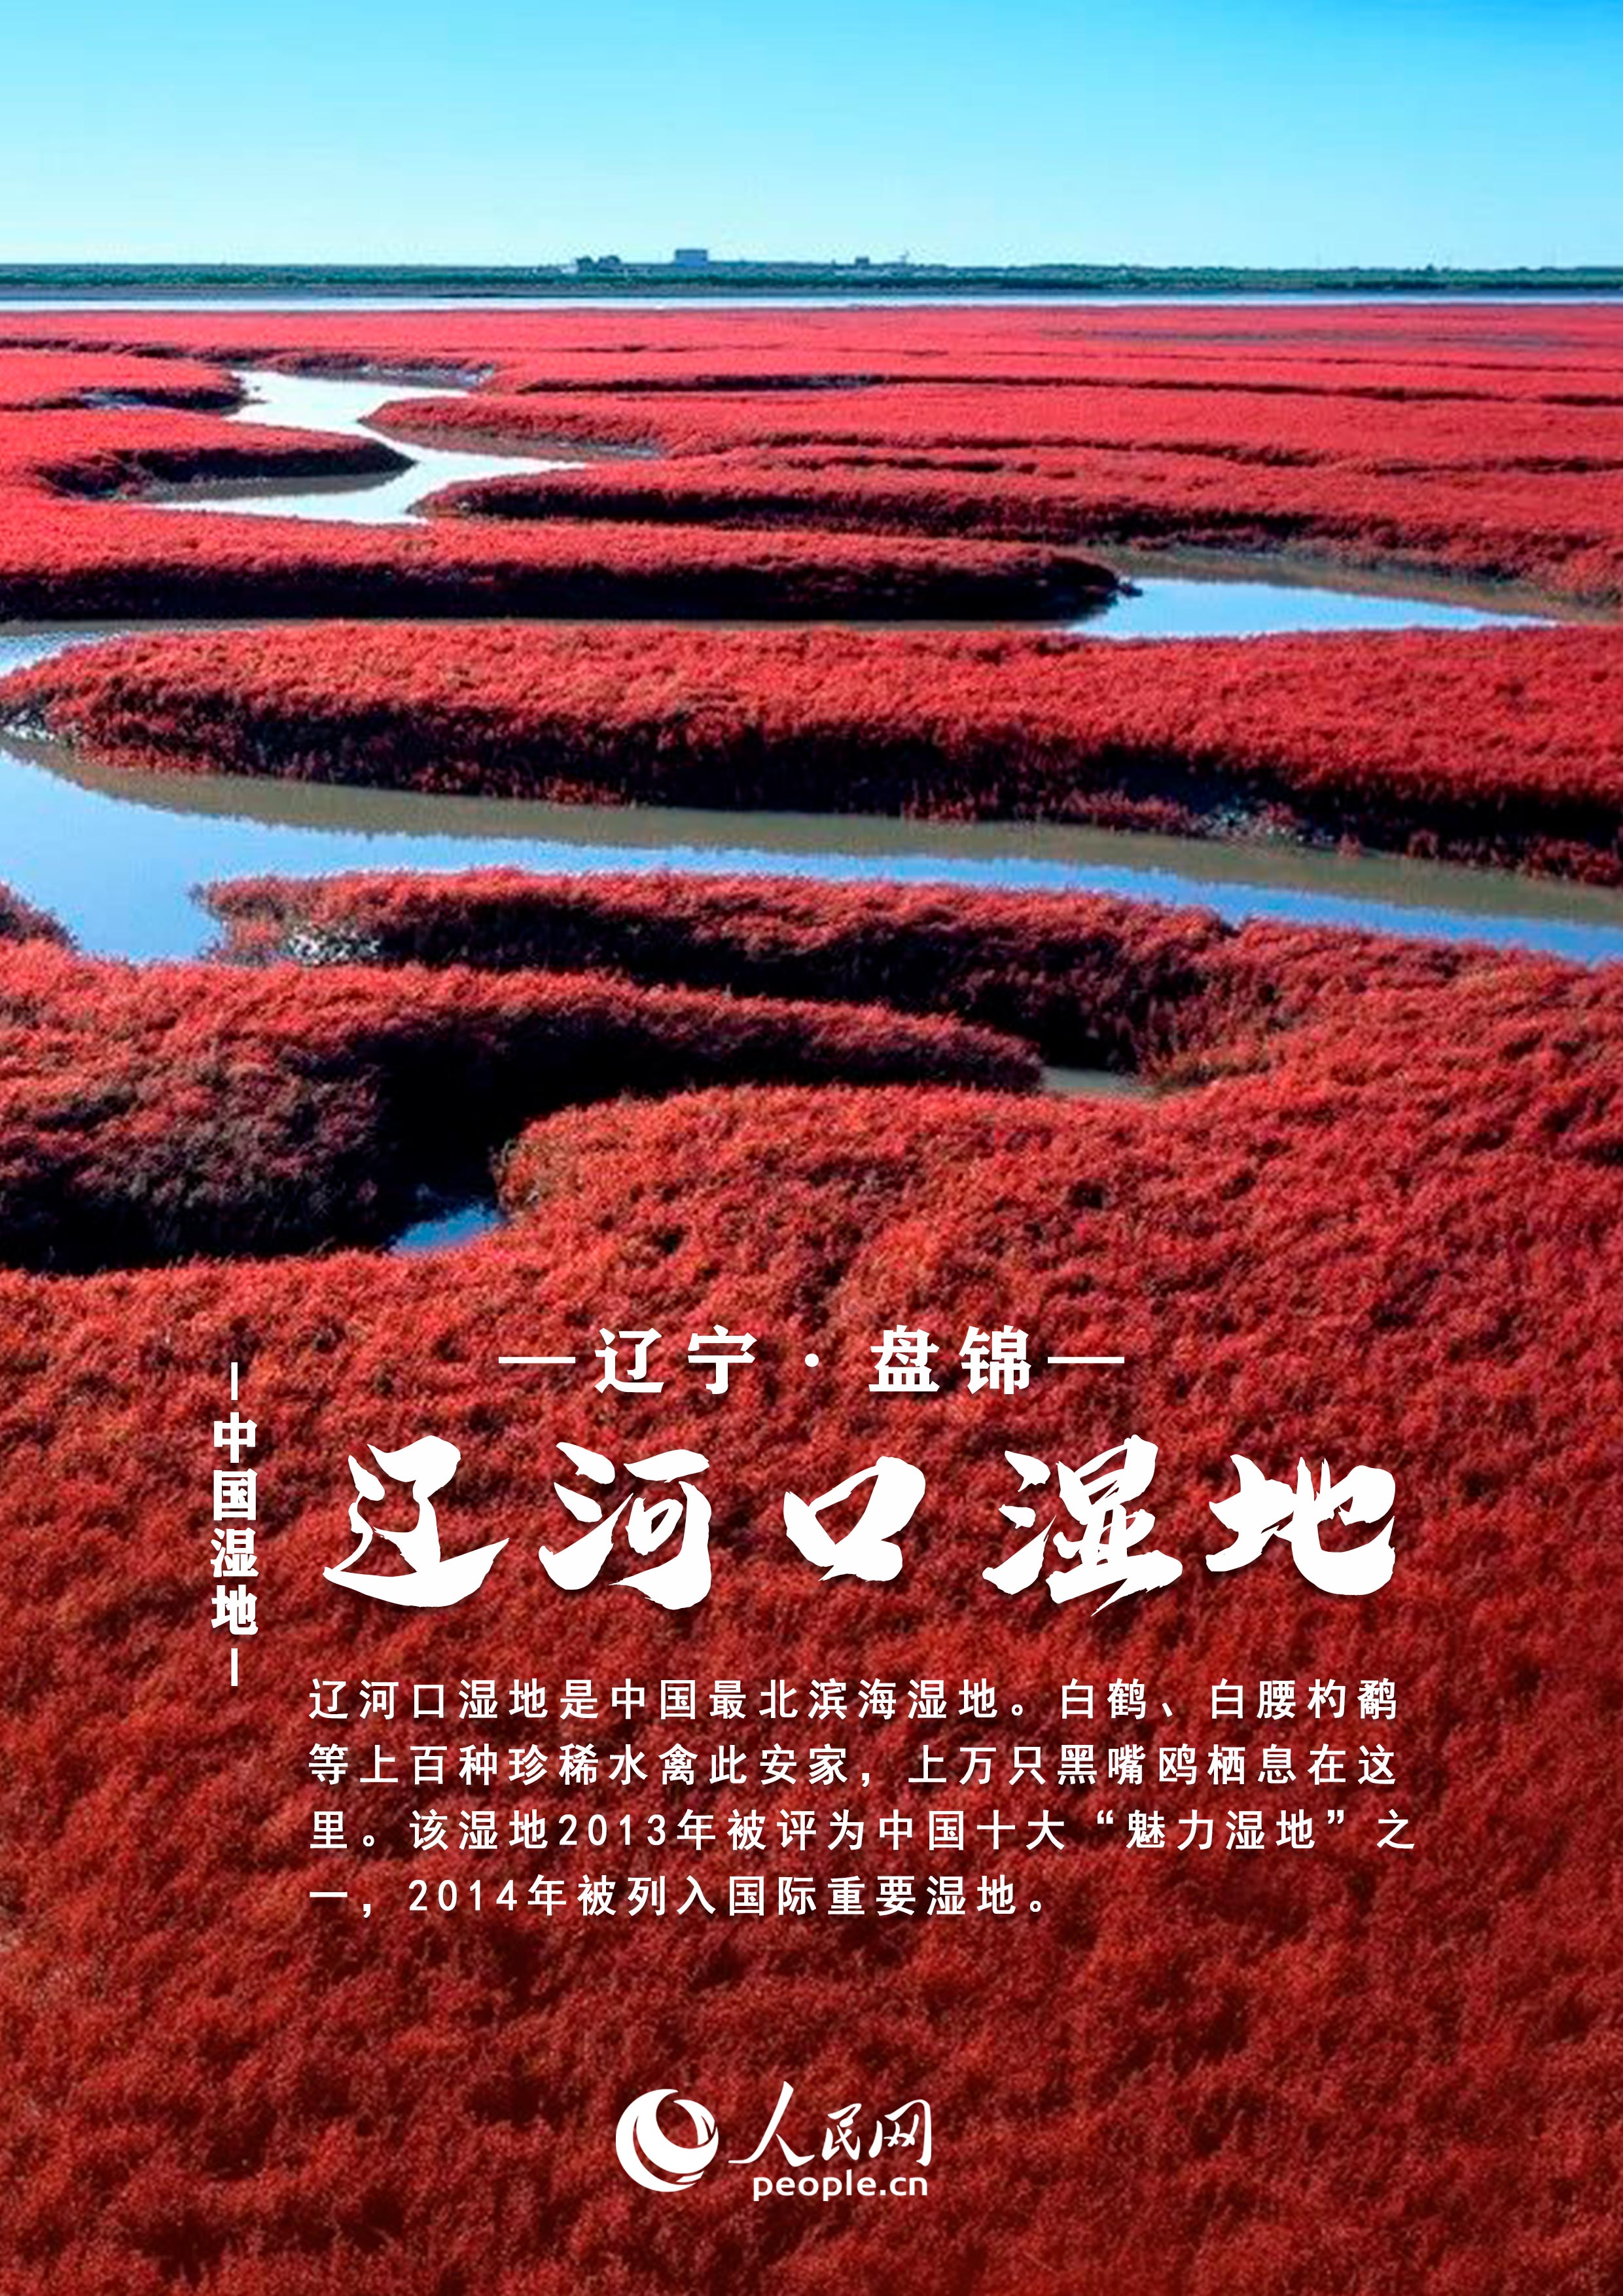 中国湿地大赏丨邀你共赏绝美风光每张都值得收藏！